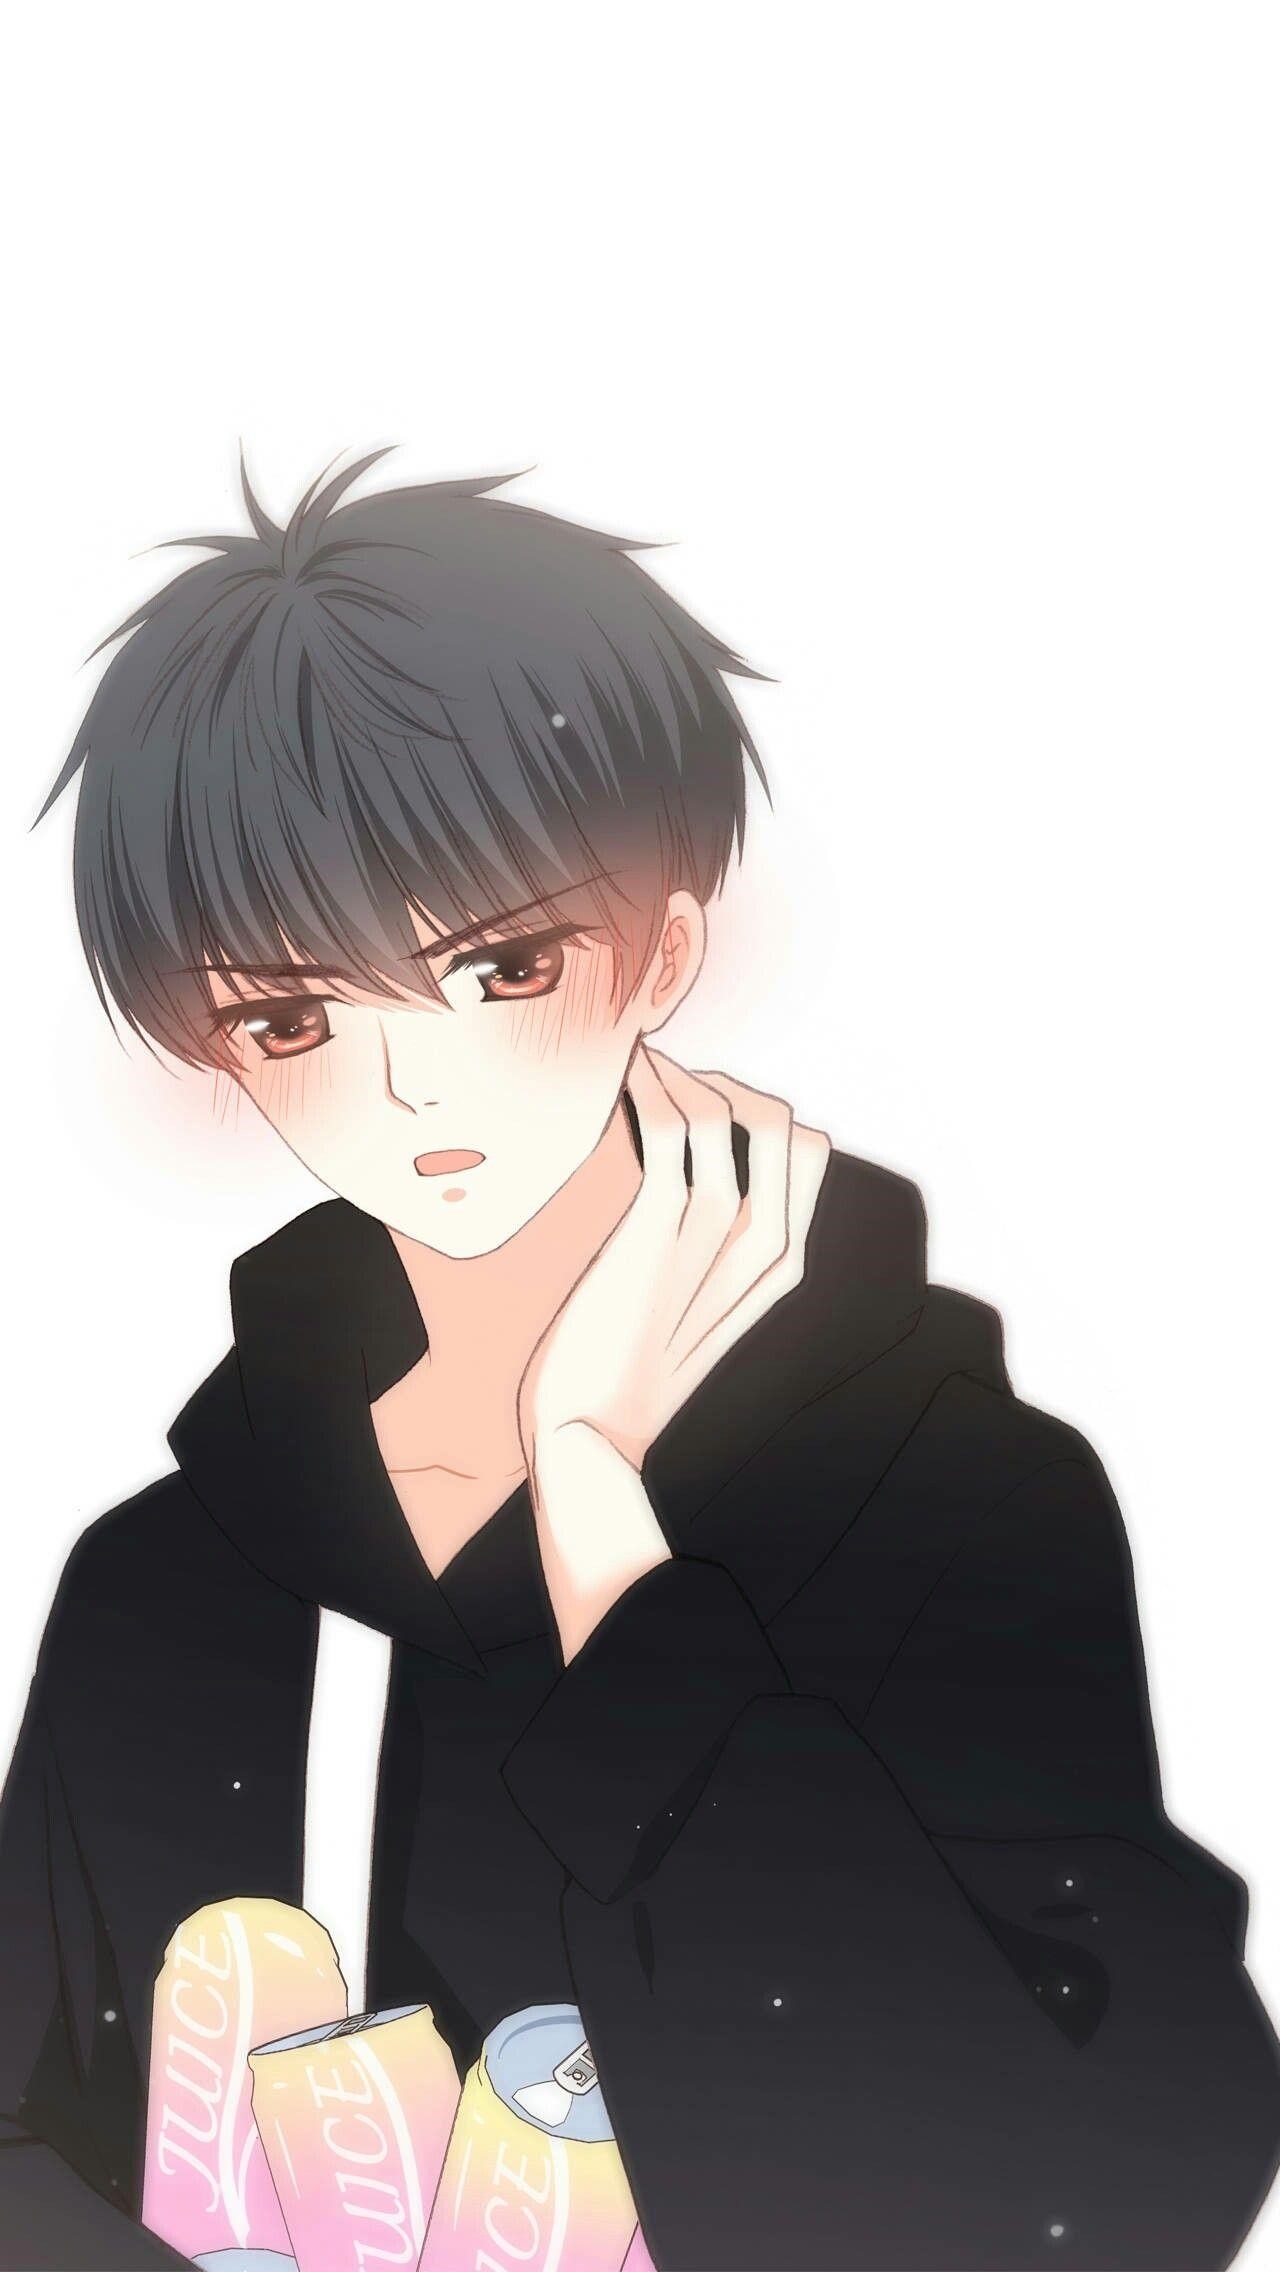 Hình ảnh Anime Boy. lạnh lùng vô cảm đẹp nhất